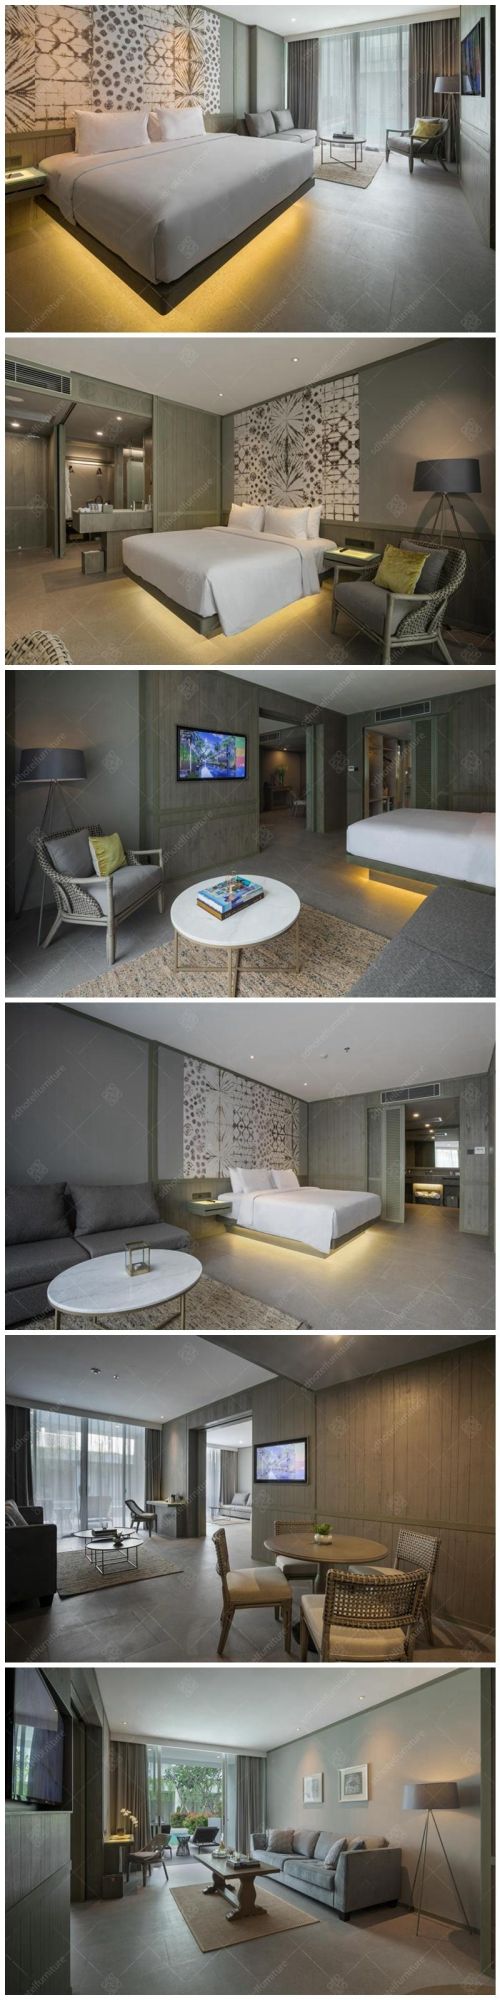 Elegant Design Luxury Resort Hotel Bedroom Furniture Sets Commercial Furniture Sets